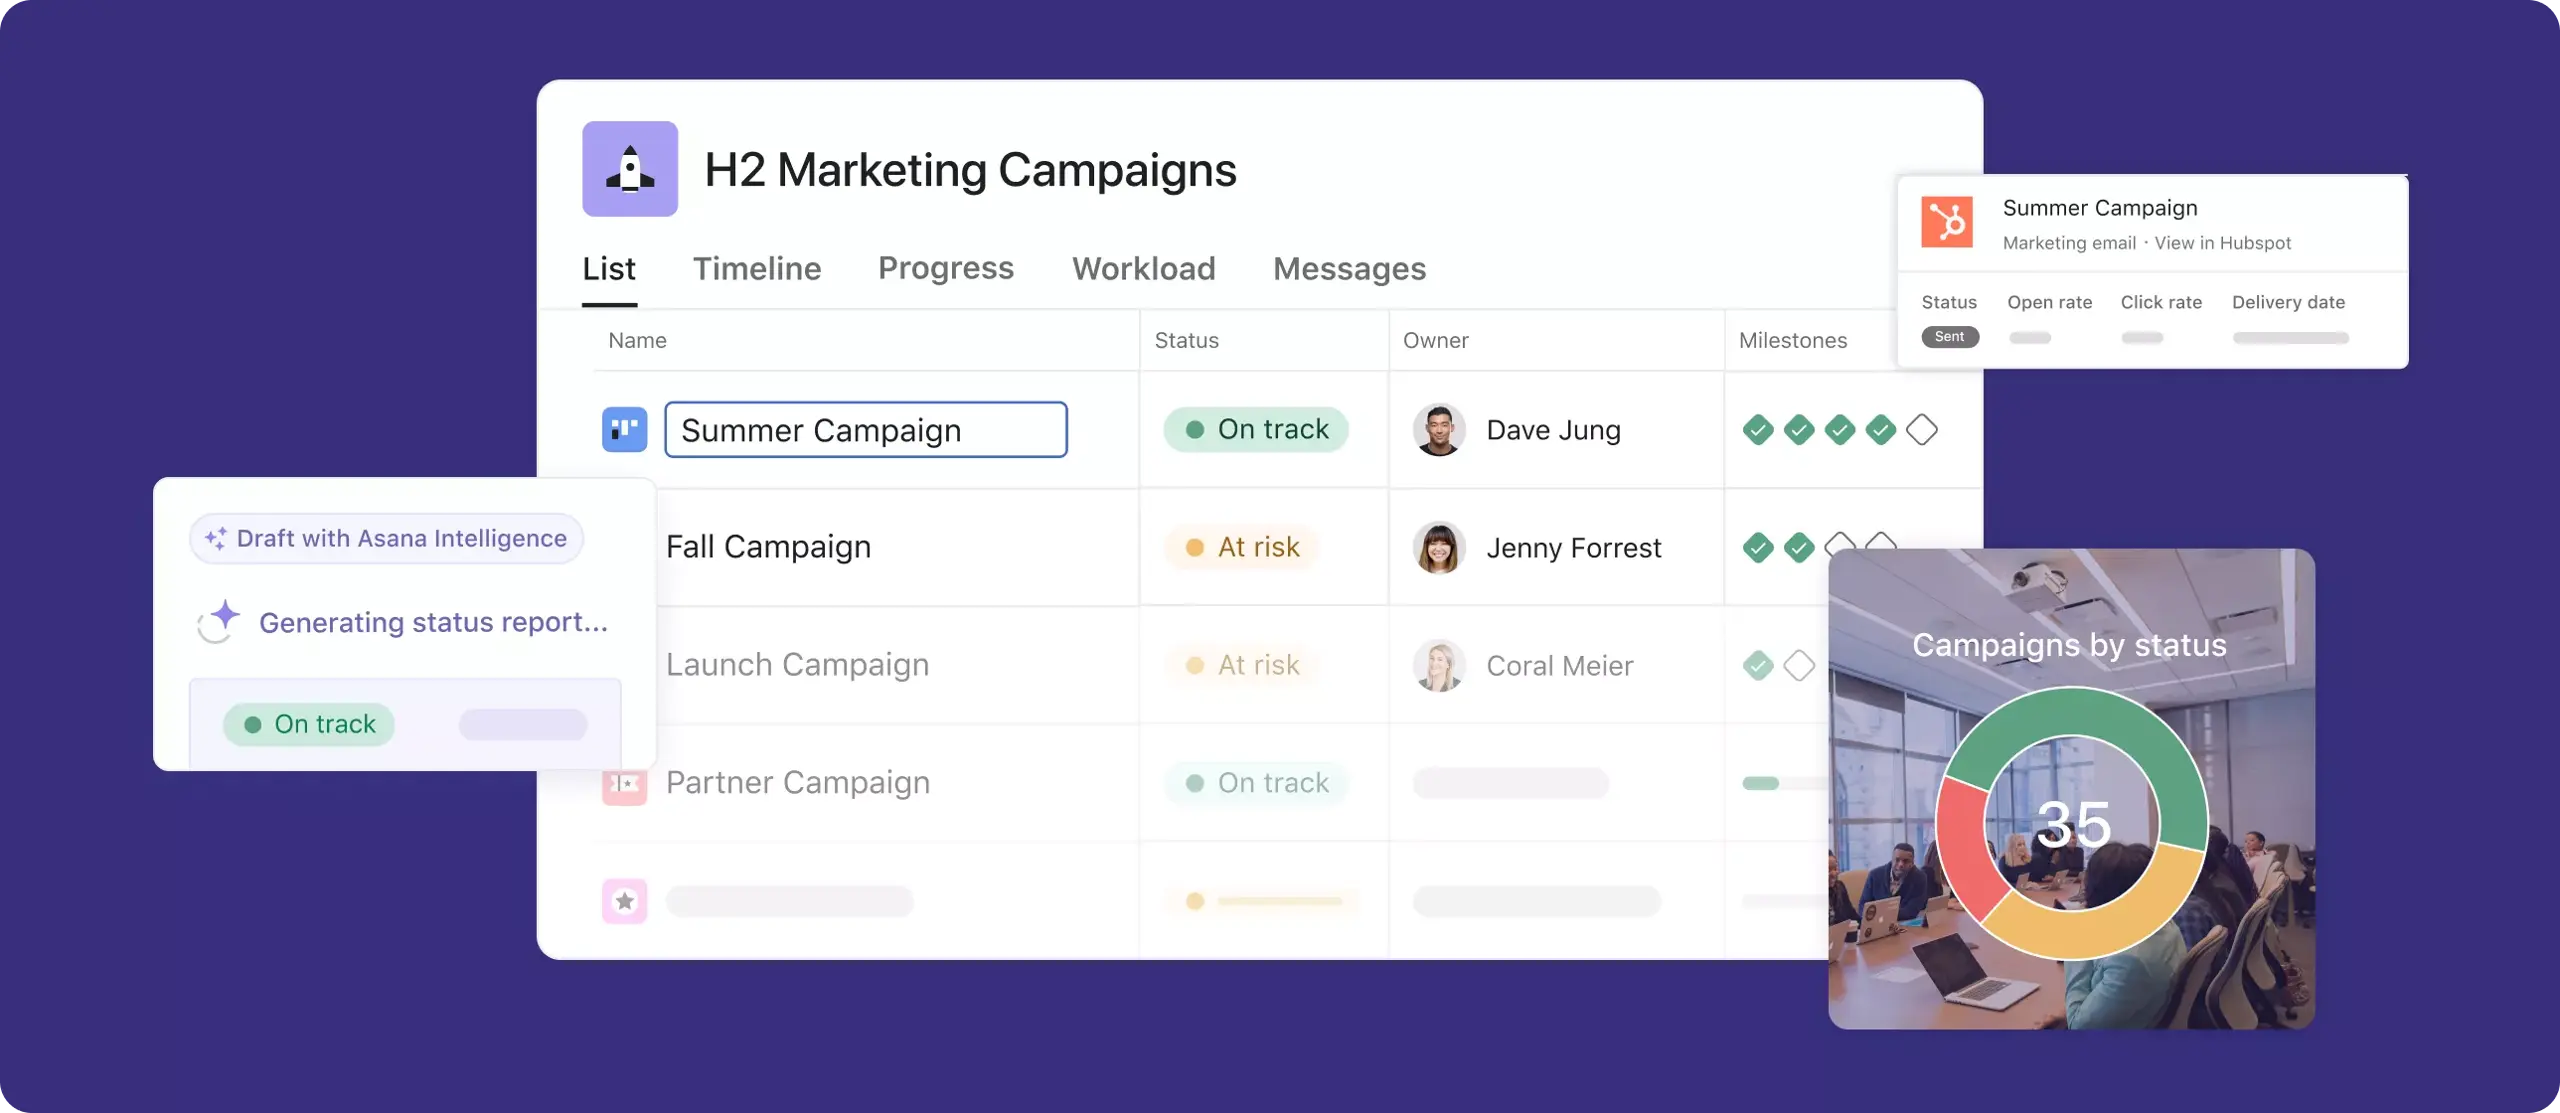 Asana 제품 UI의 마케팅 캠페인 관리 히어로 이미지 